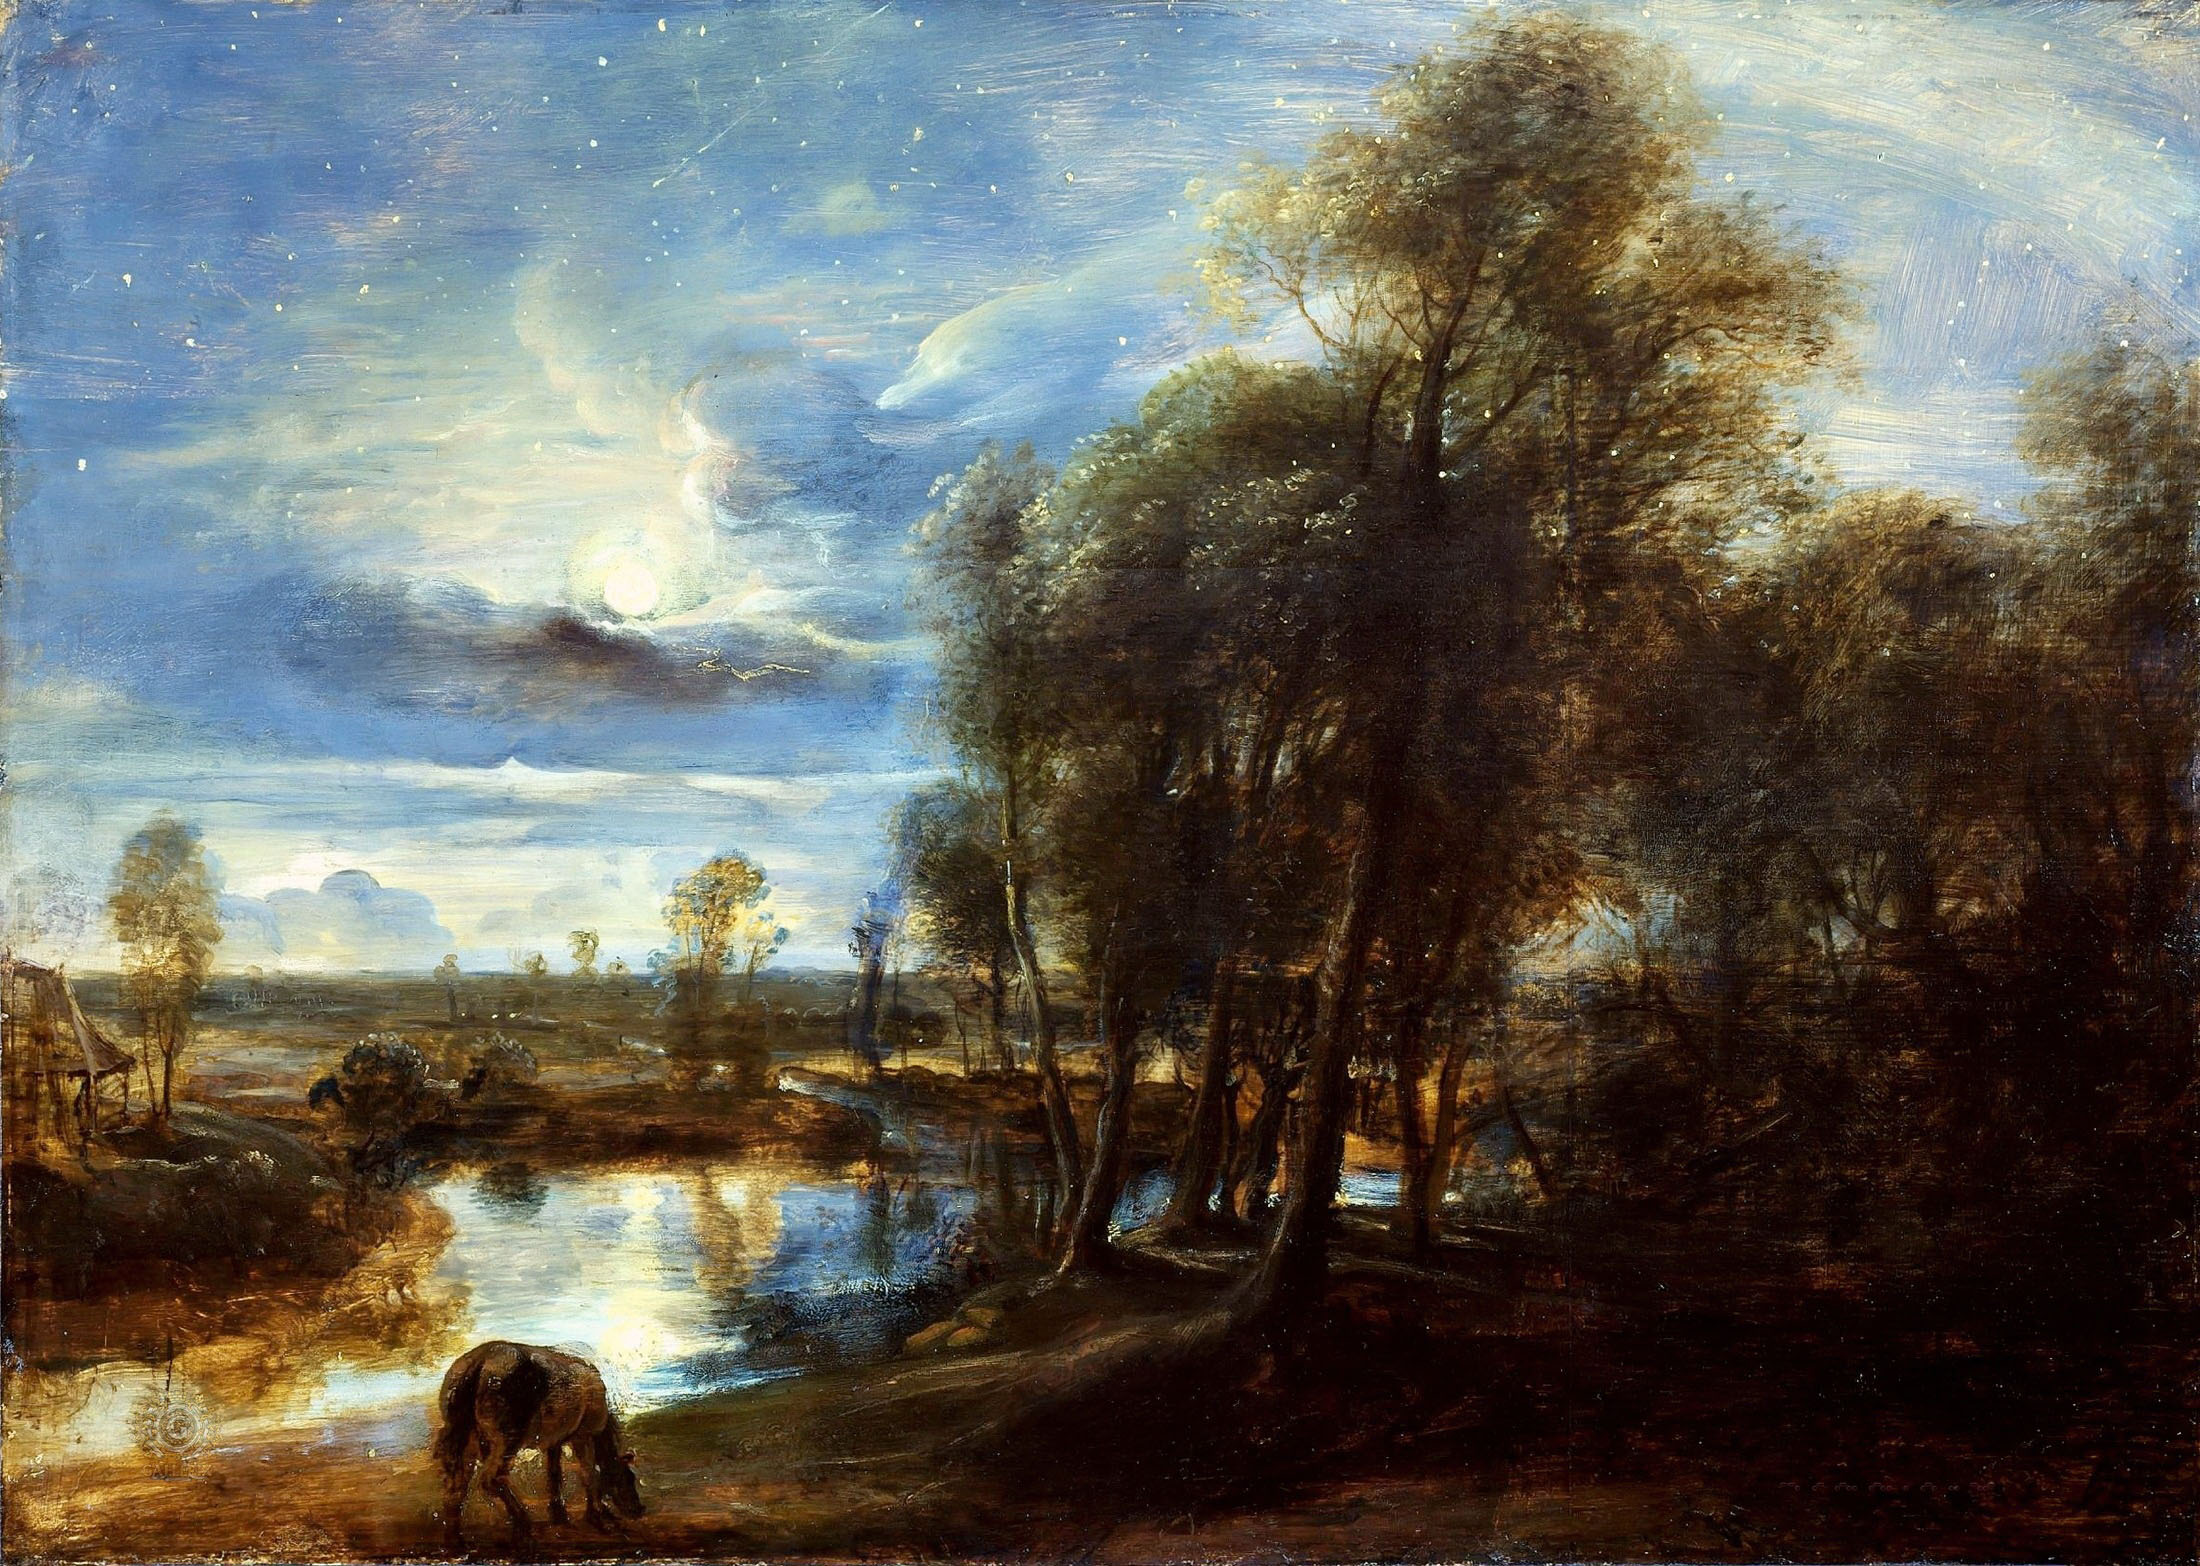 Питер Пауль Рубенс. "Пейзаж в лунном свете". 1635-1640. Институт искусств Курто, Лондон.